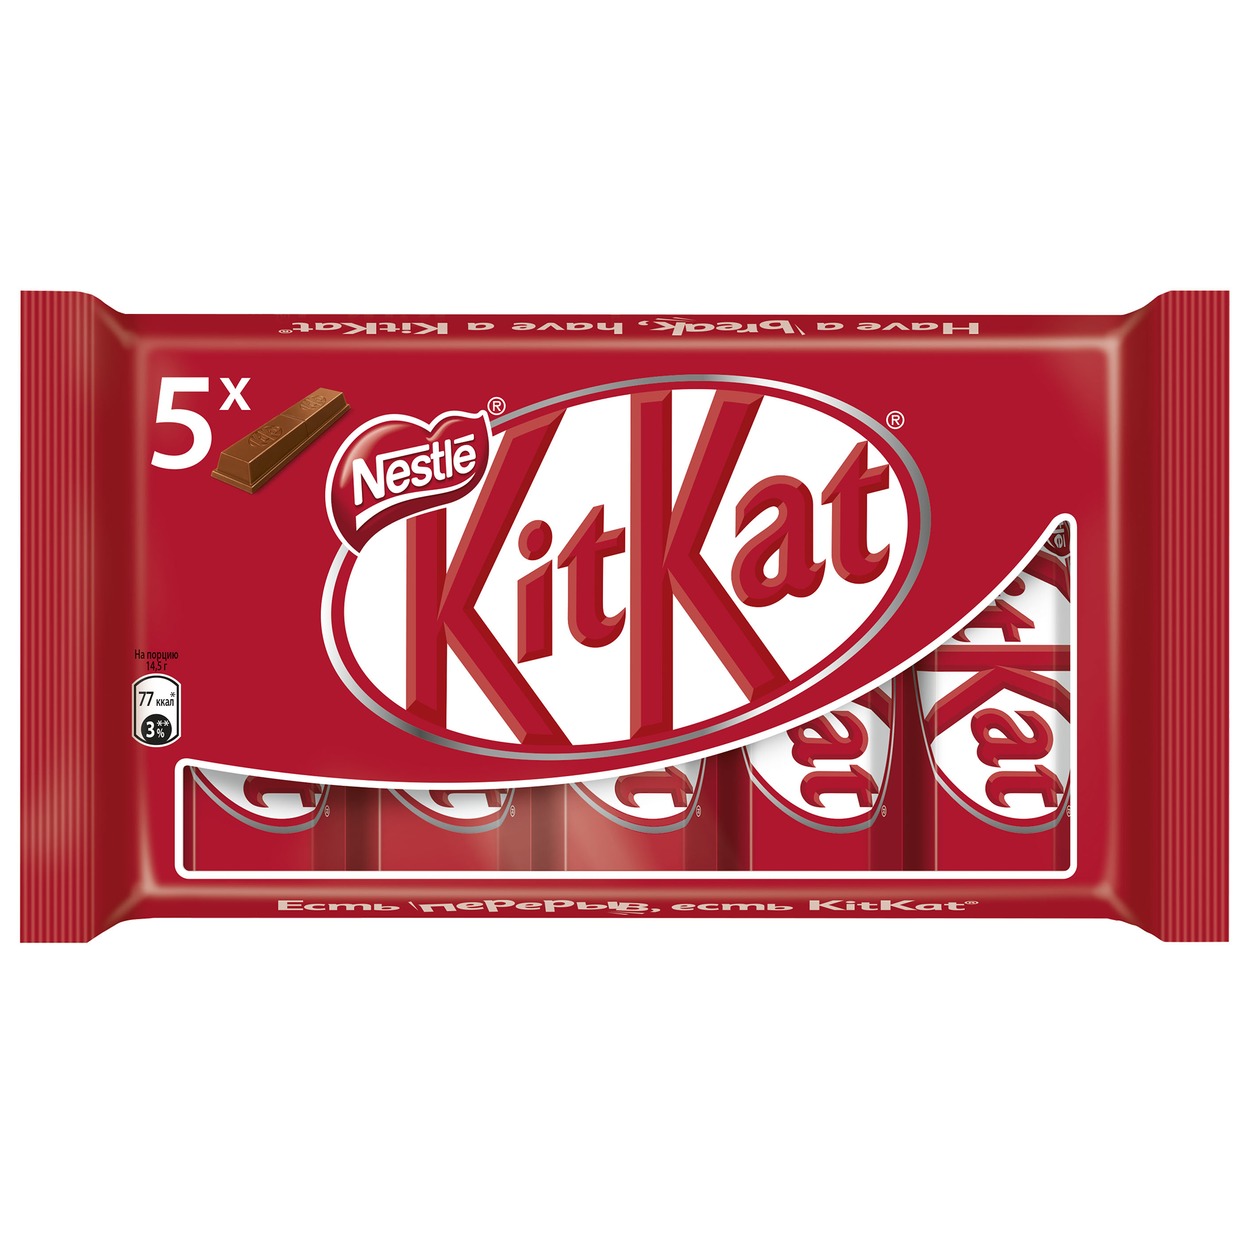 Шоколад Kit Kat, молочный, с хрустящей вафлей, 145 г по акции в Пятерочке